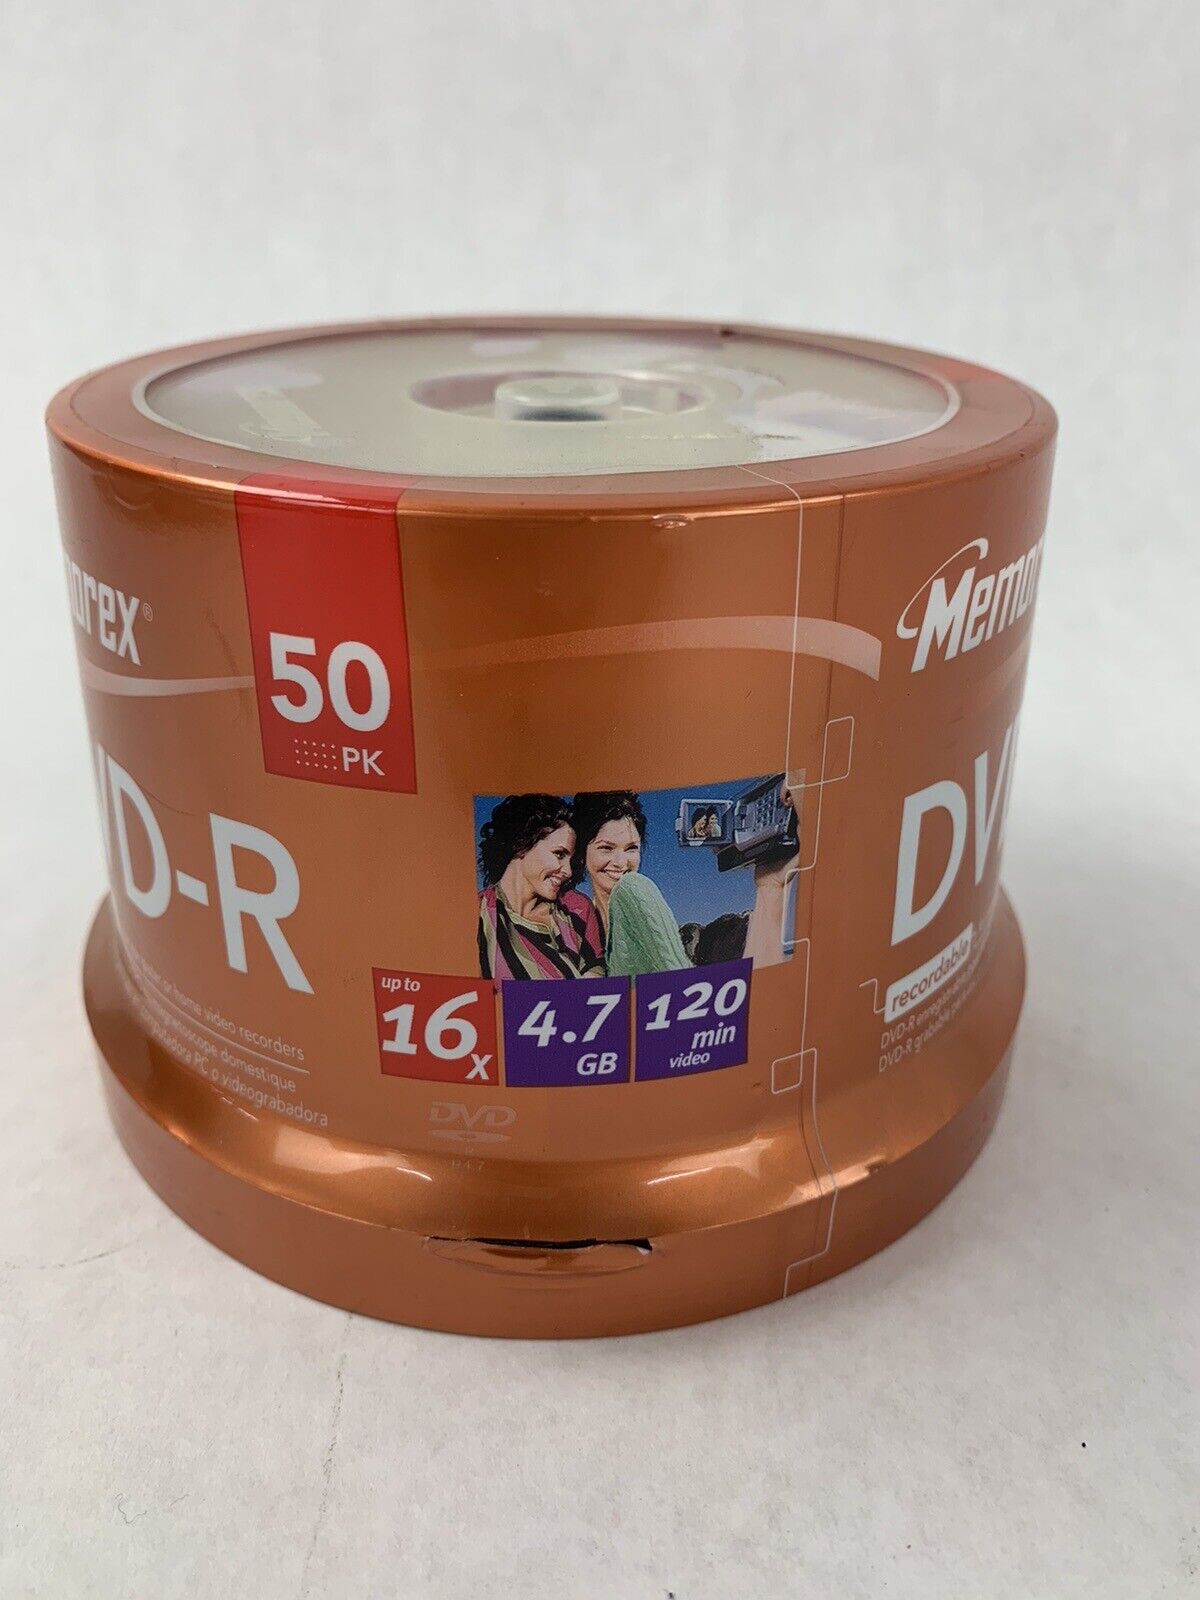 Lot of 3 Memorex DVD-R 50 Pack 16X 4.7GB 120 Min